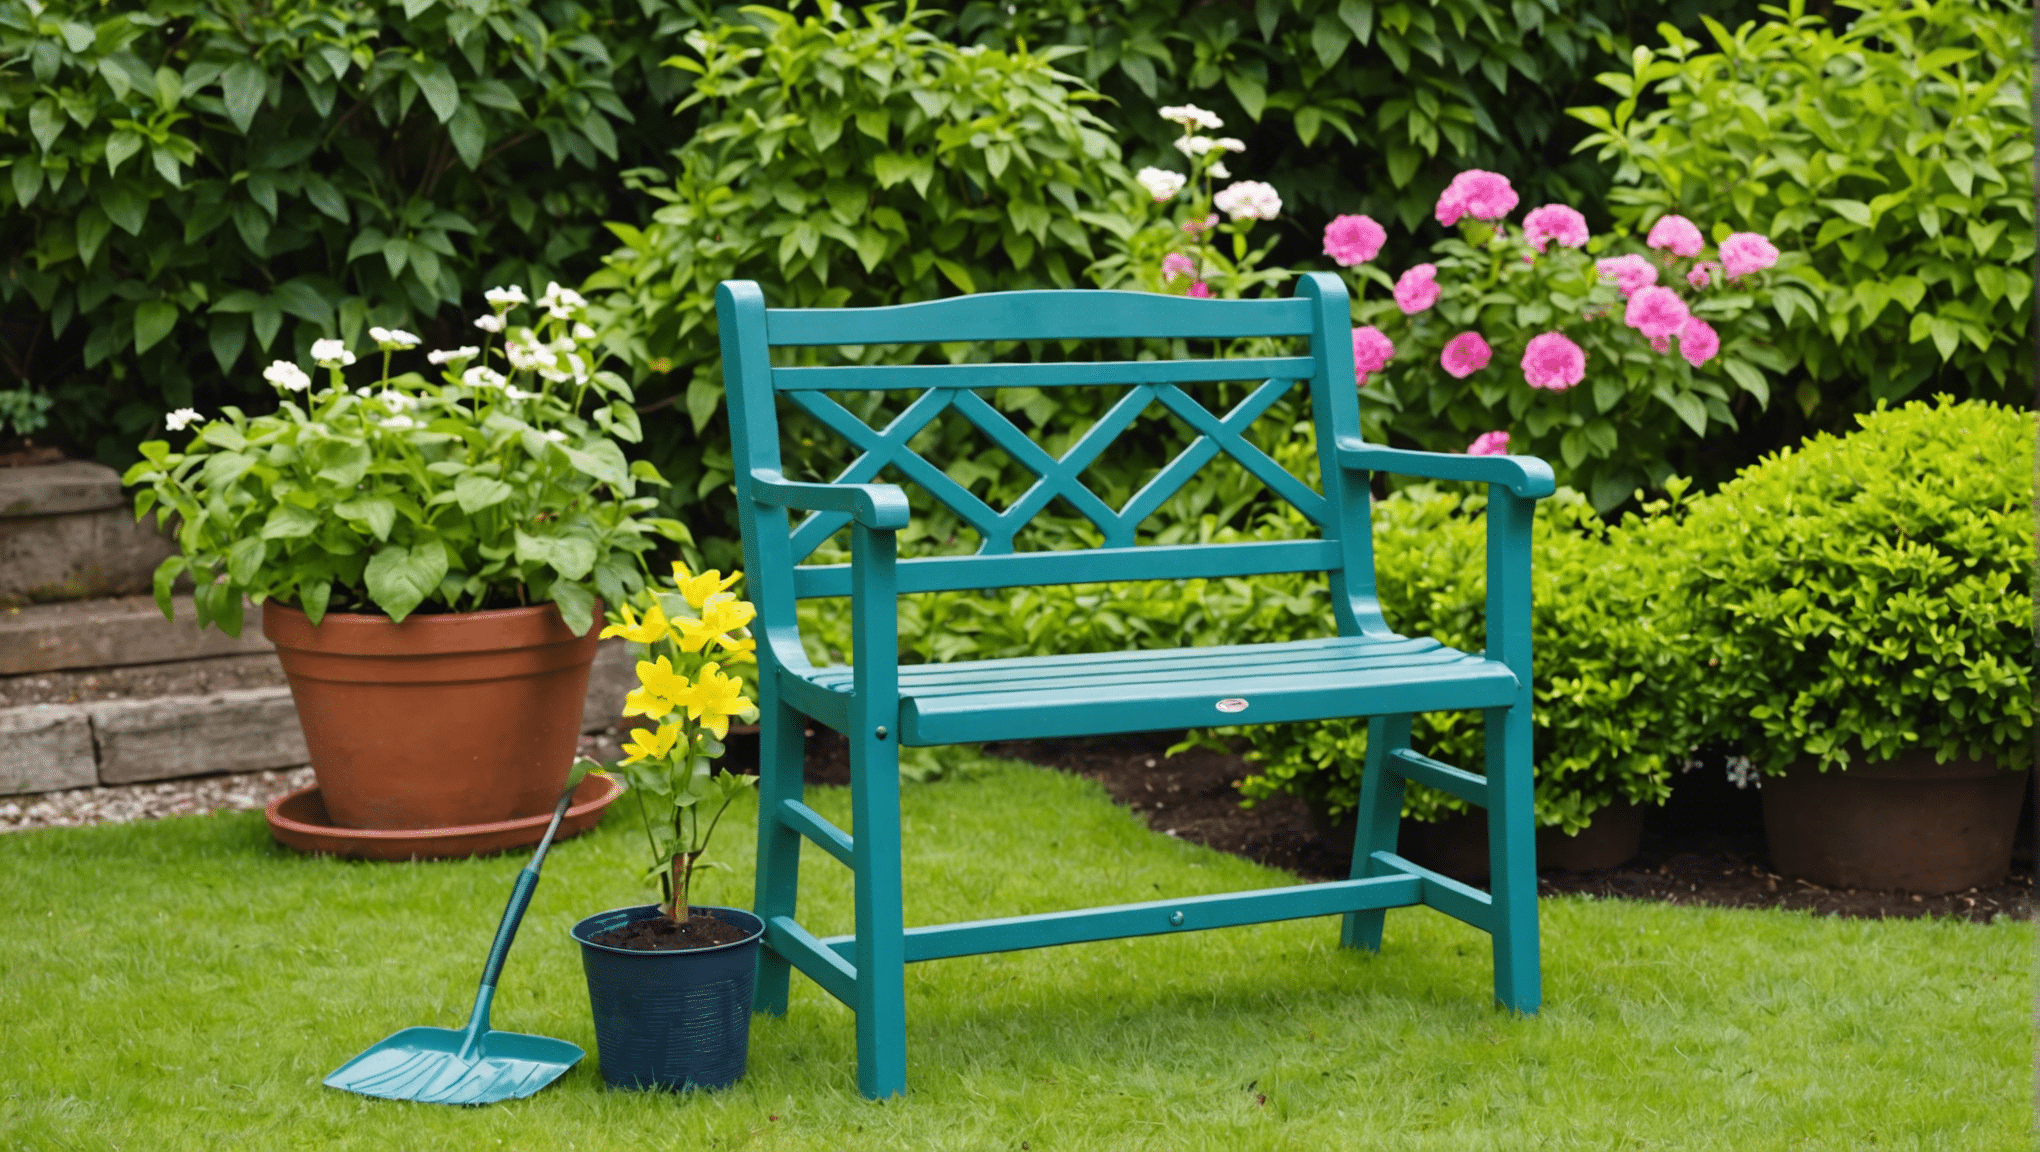 descubra os benefícios de usar um assento de jardinagem e como ele pode melhorar sua experiência de jardinagem. salve suas costas e joelhos enquanto aproveita seu tempo no jardim!